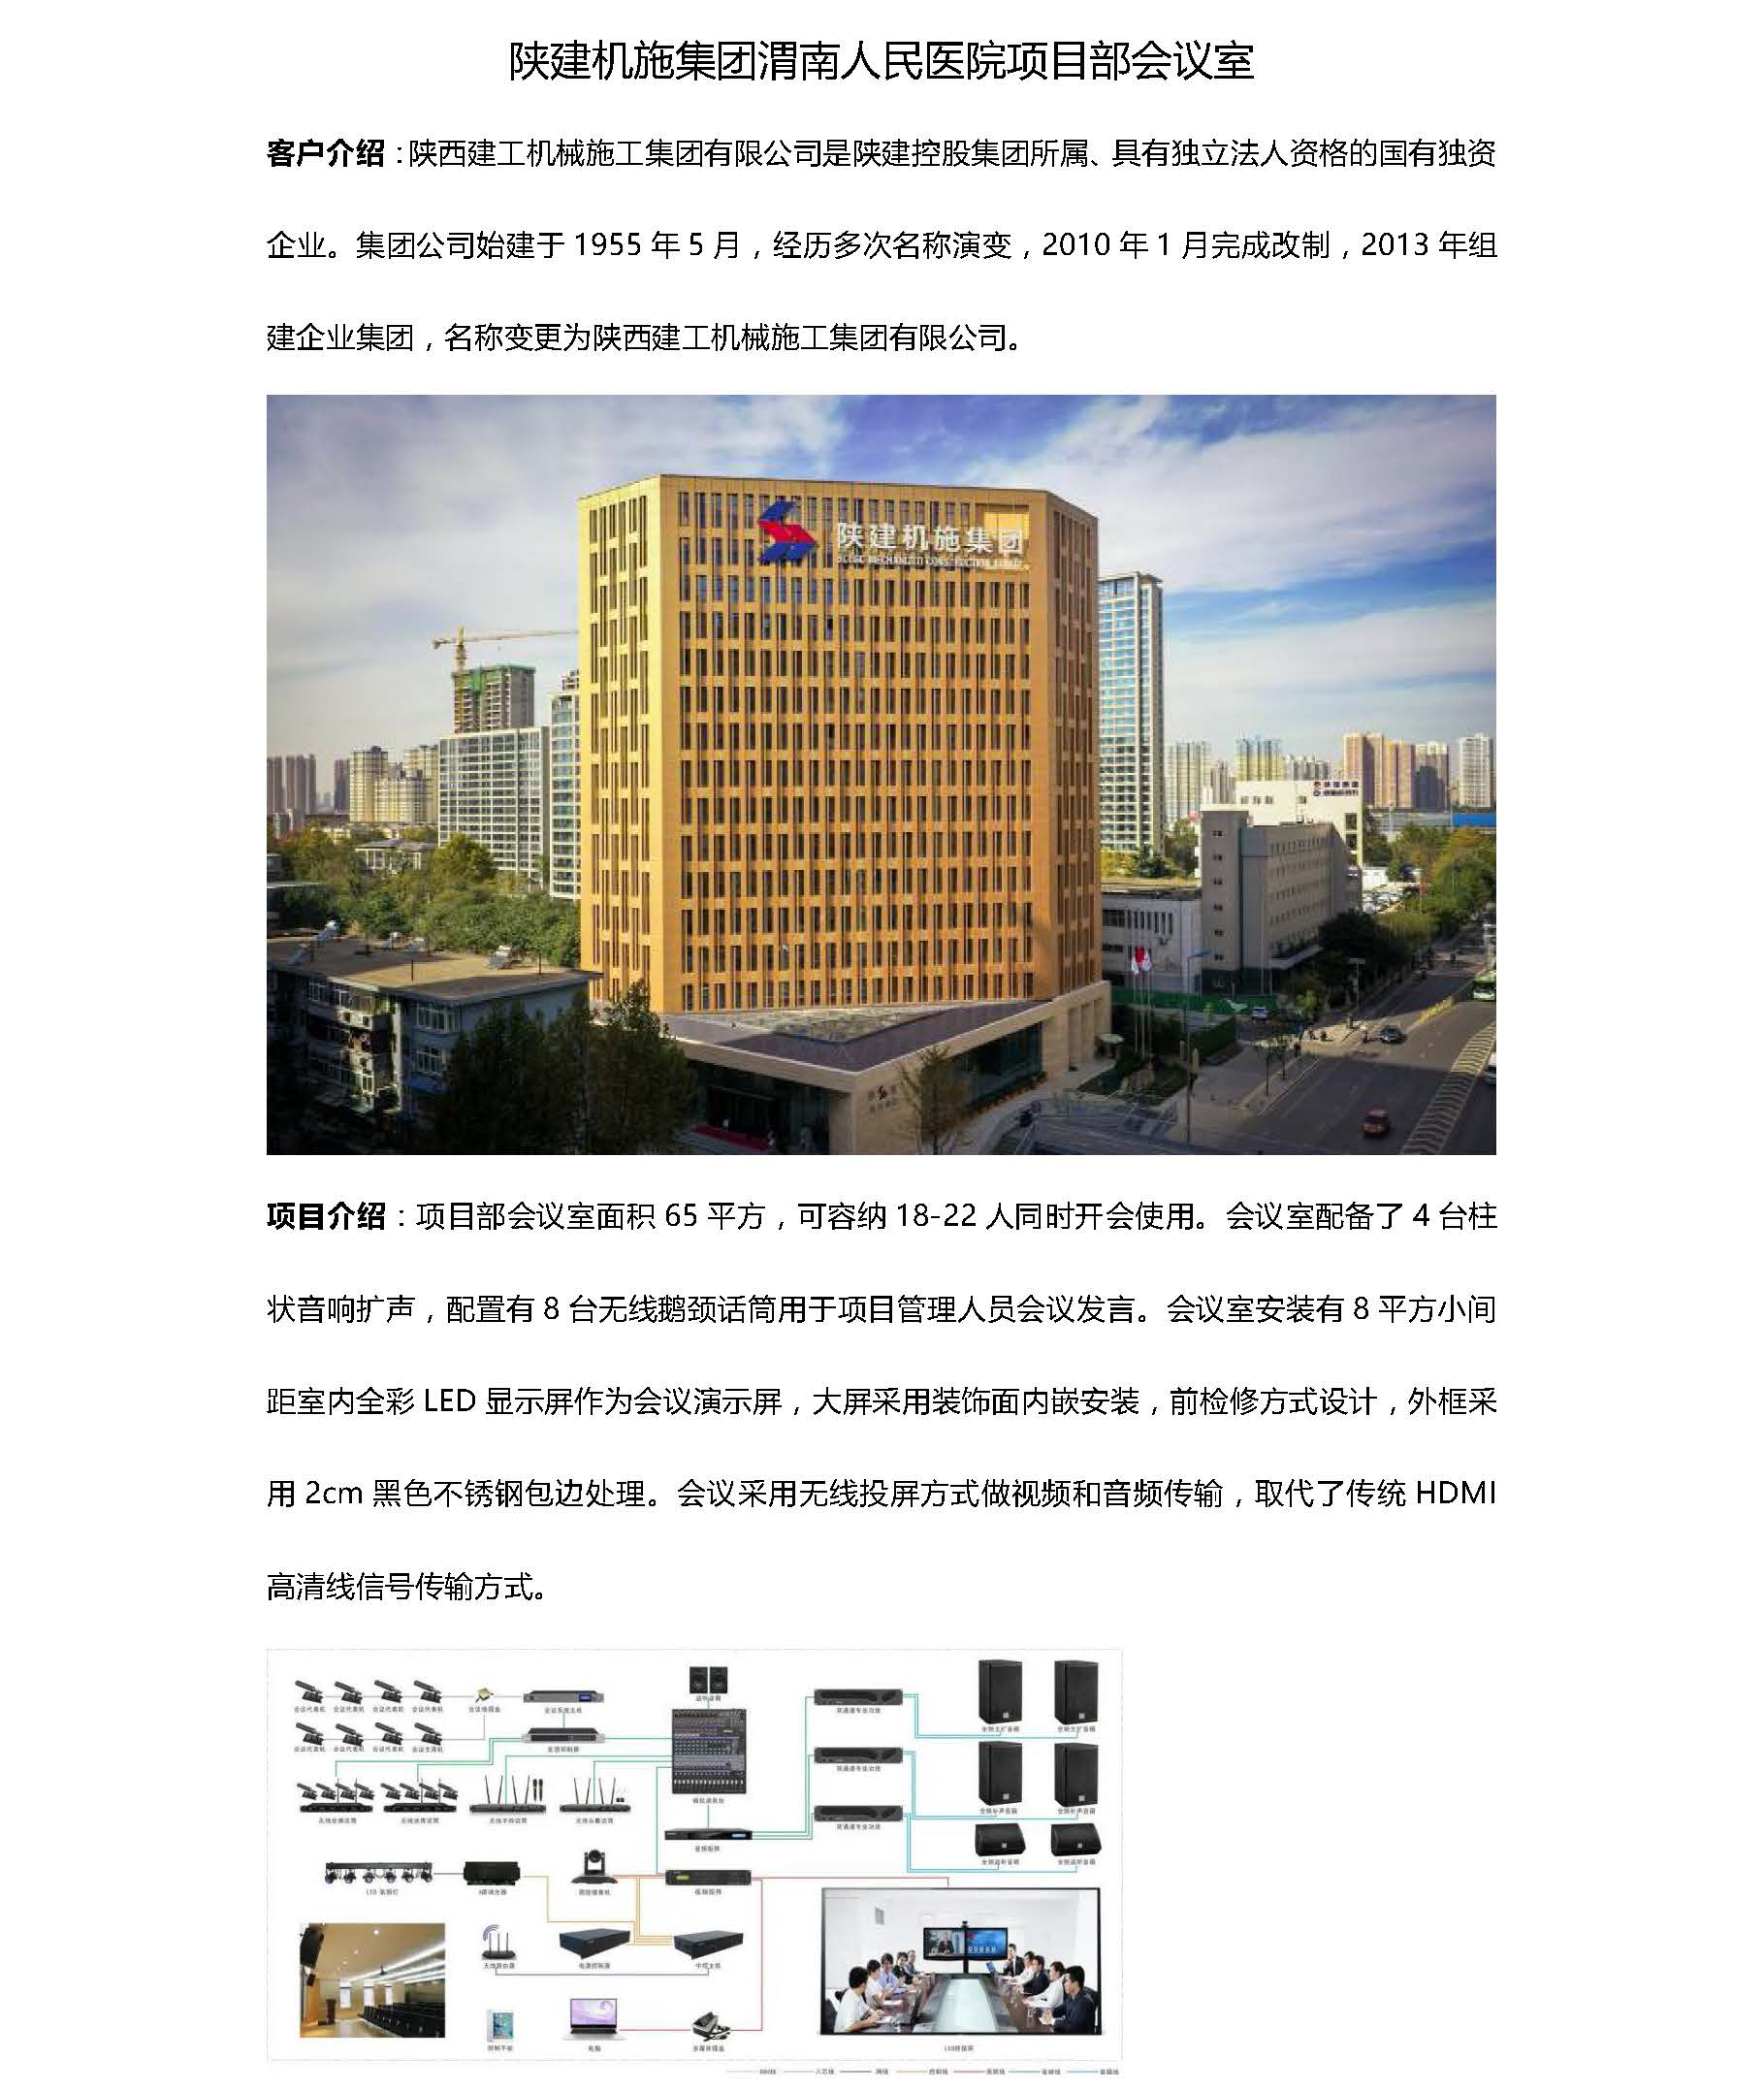 渭南人民医院项目部会议室_页面_1